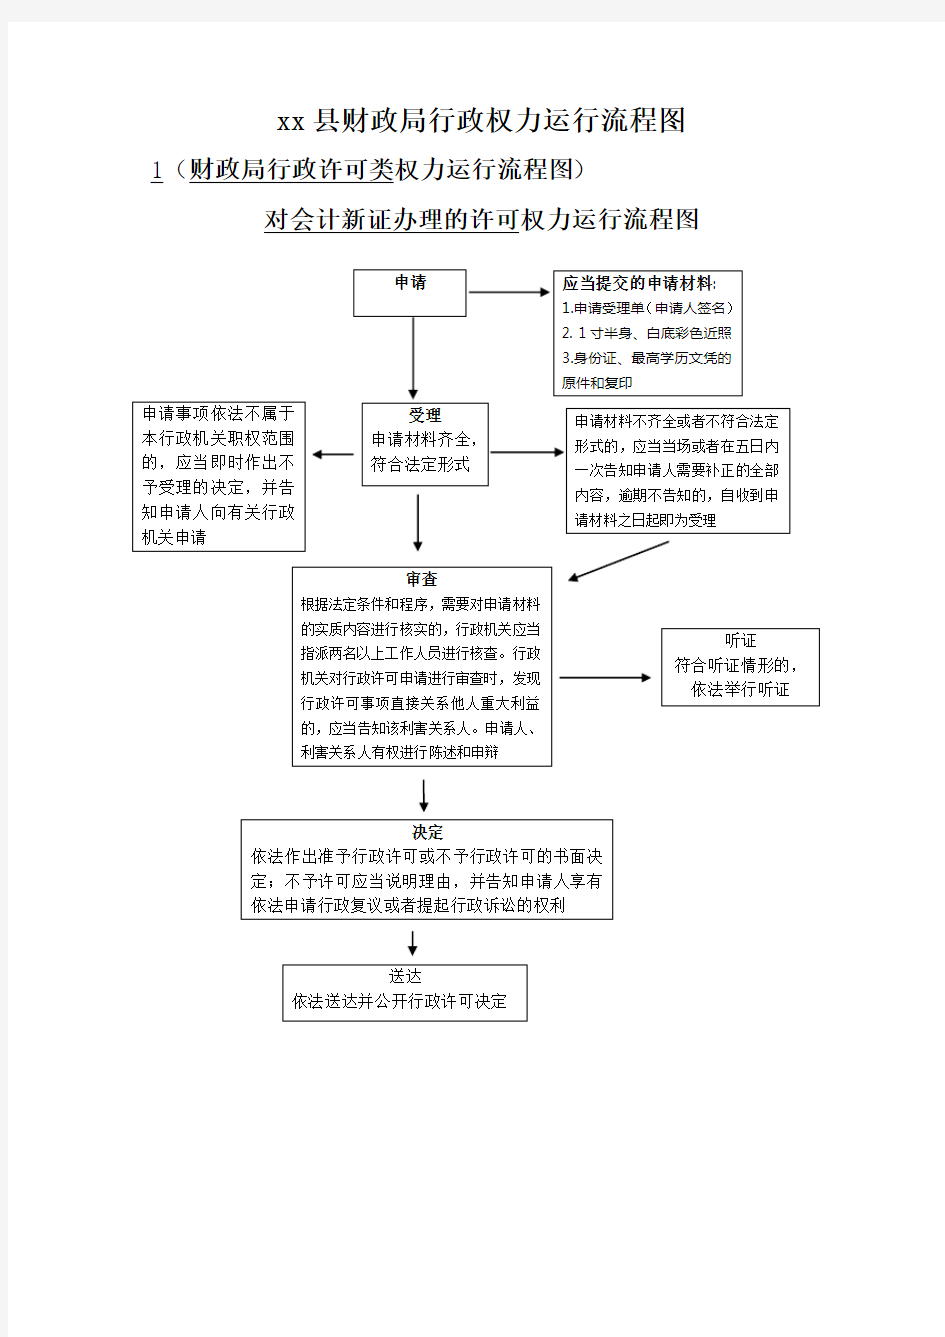 县财政局部门行政权力运行流程图